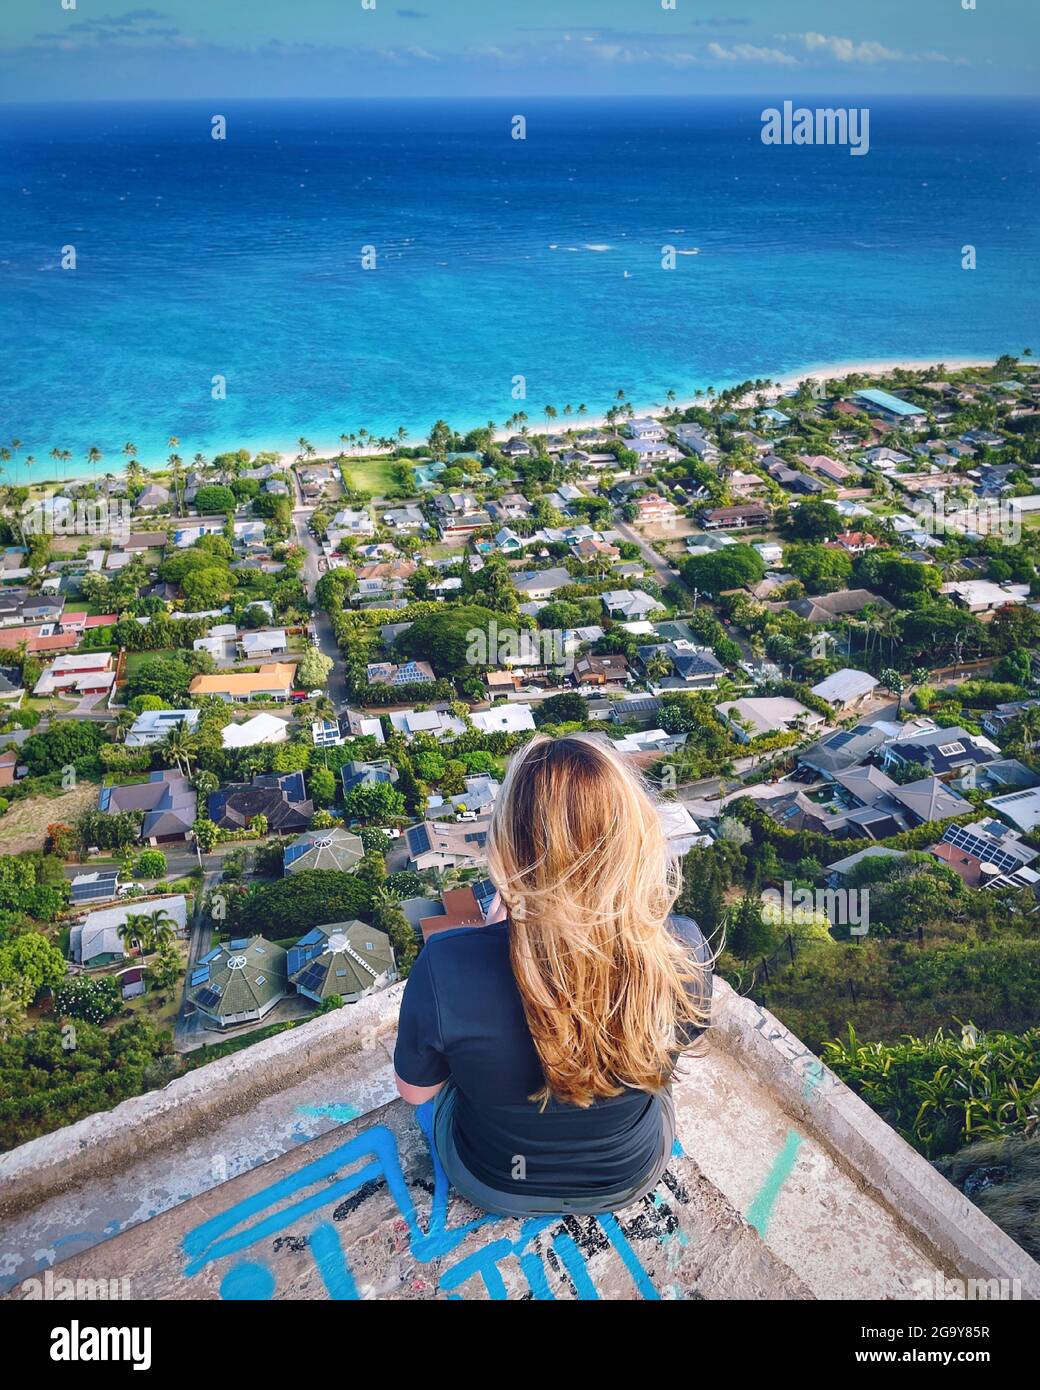 Rückansicht einer Frau, die auf einem Bunker sitzt und die Kailua Bay, Oahu, Hawaii, USA, betrachtet Stockfoto